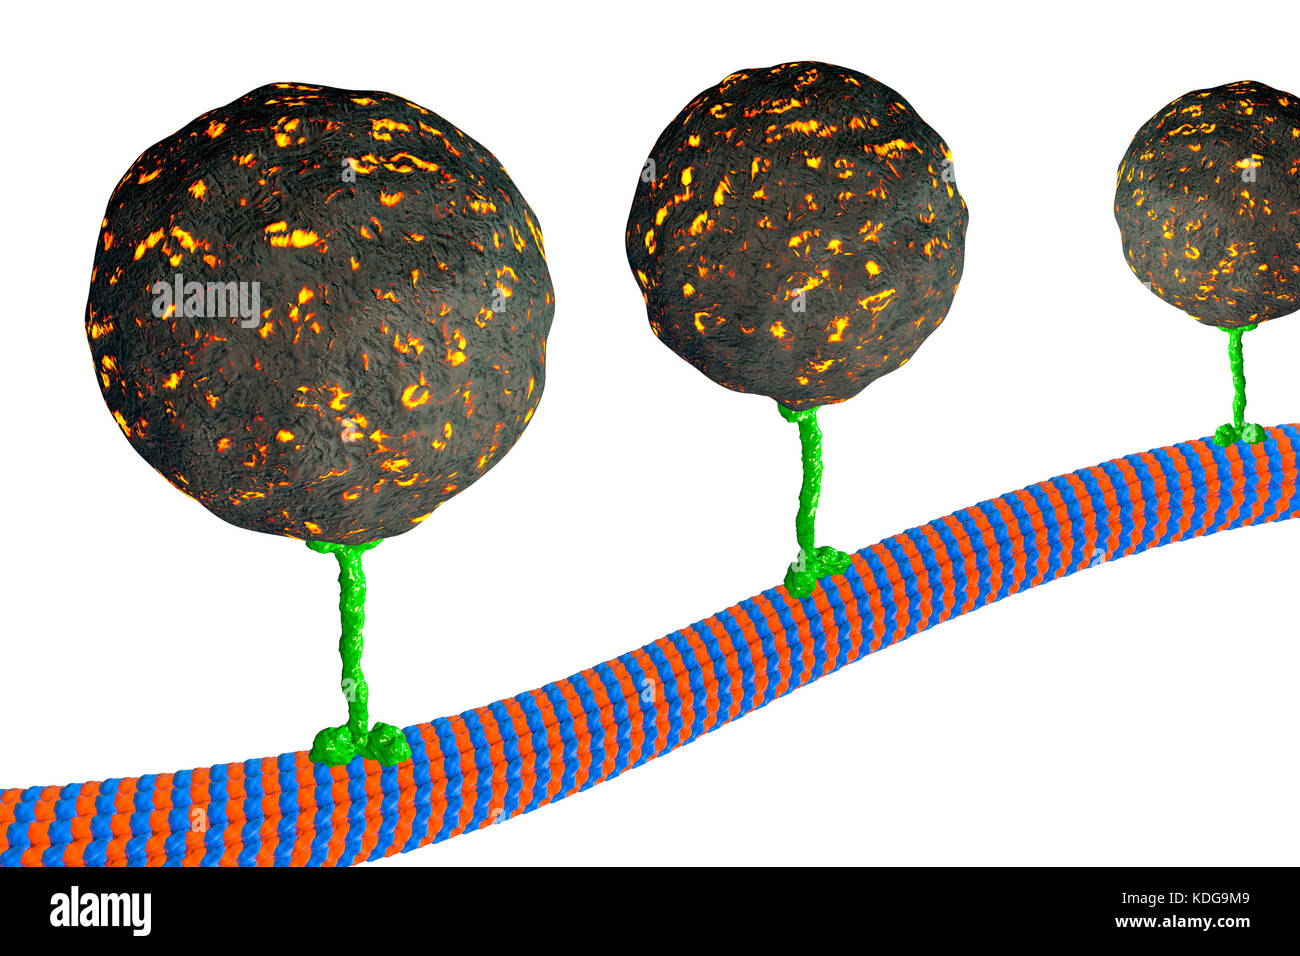 Transporte intracelular. Ilustración del equipo de vesículas (esferas) transportada por un microtúbulo por una proteína motora quinesina. Quinesinas son capaces de 'paseo' a lo largo de los microtúbulos. Los microtúbulos son polímeros de la proteína tubulina y son un componente del citoesqueleto. Foto de stock